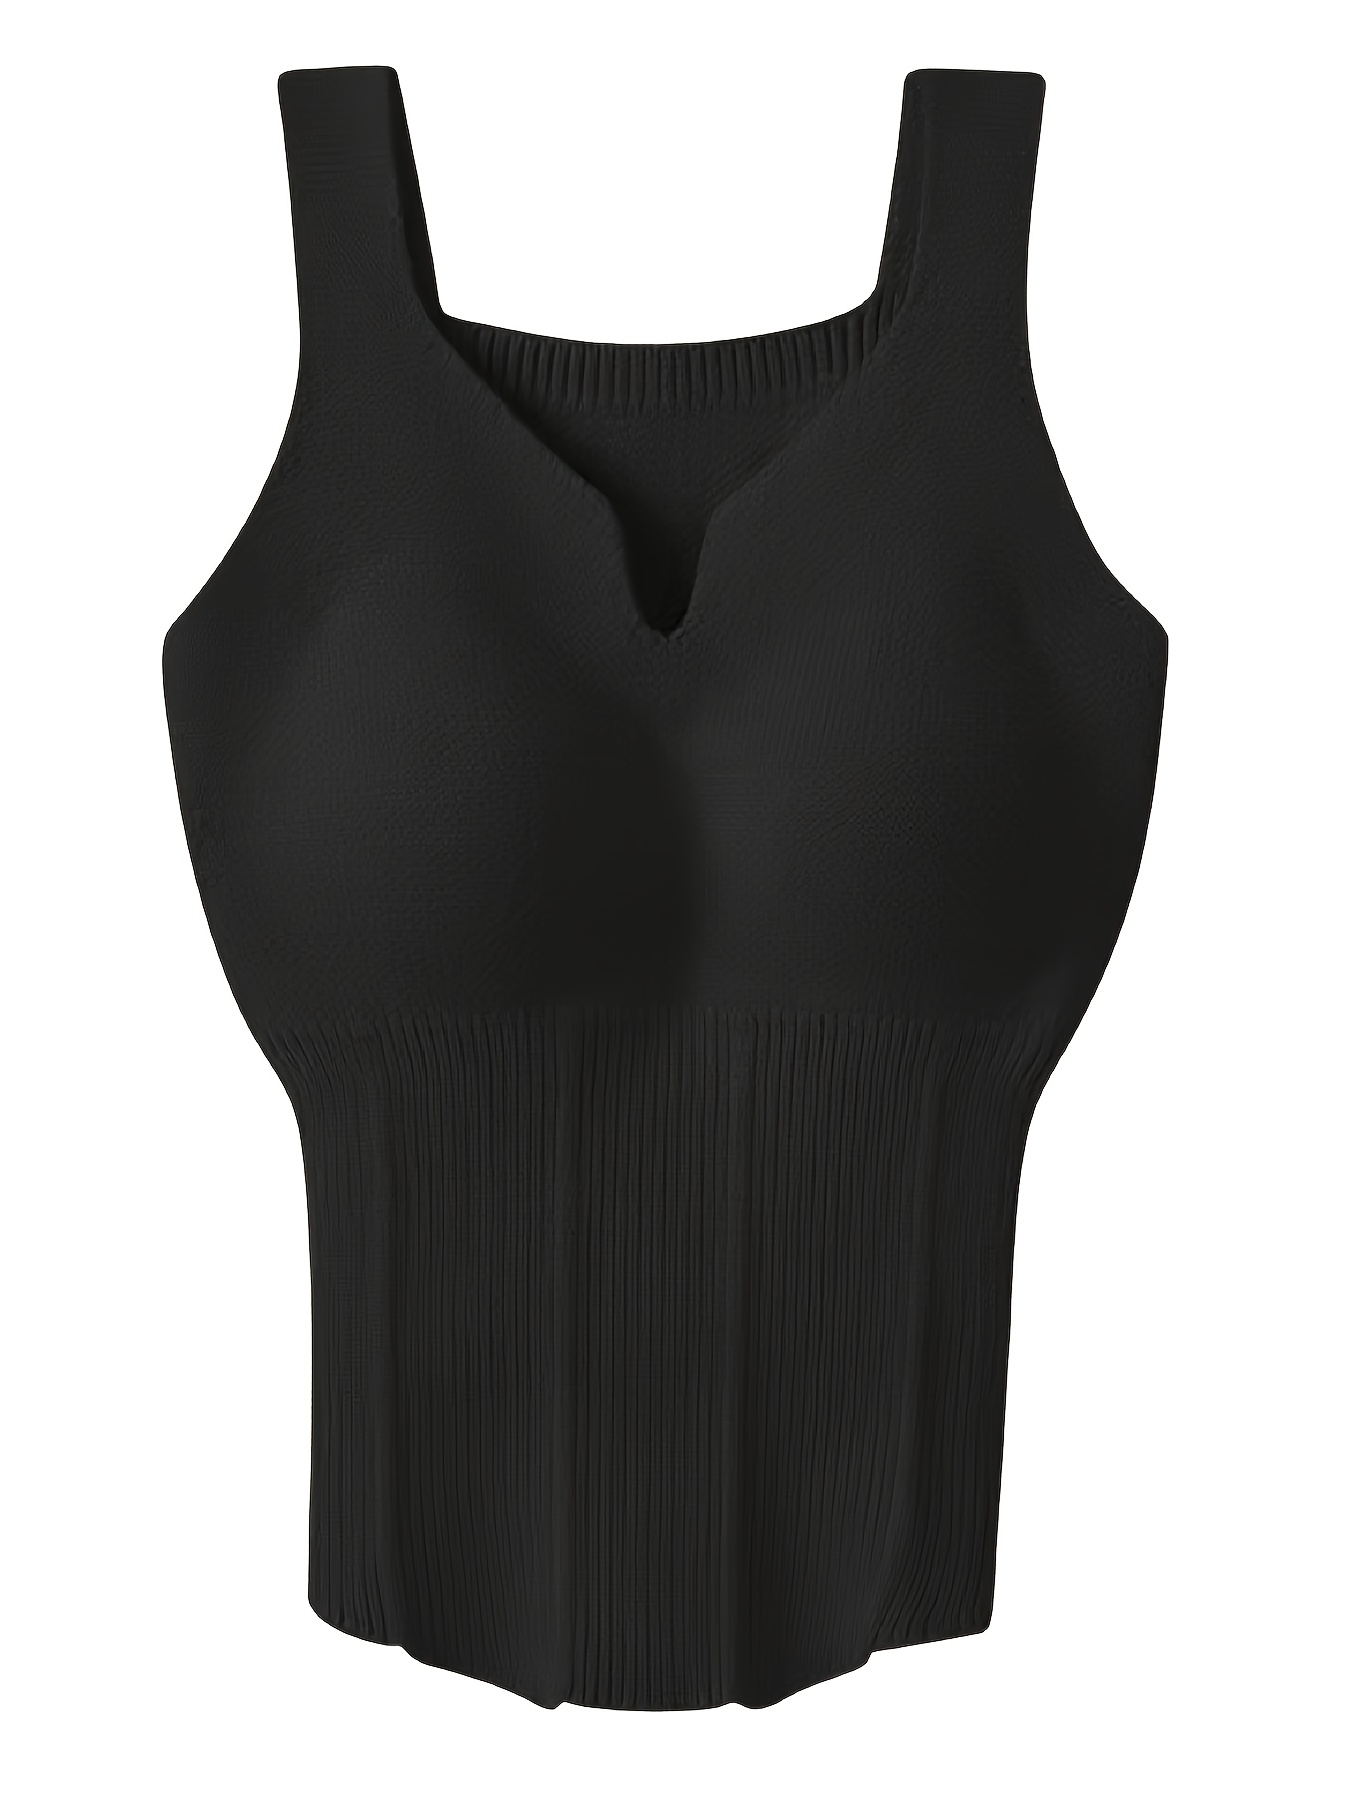 Women's Crop Tank Top with Built-in Bra Sleeveless Vest Solid